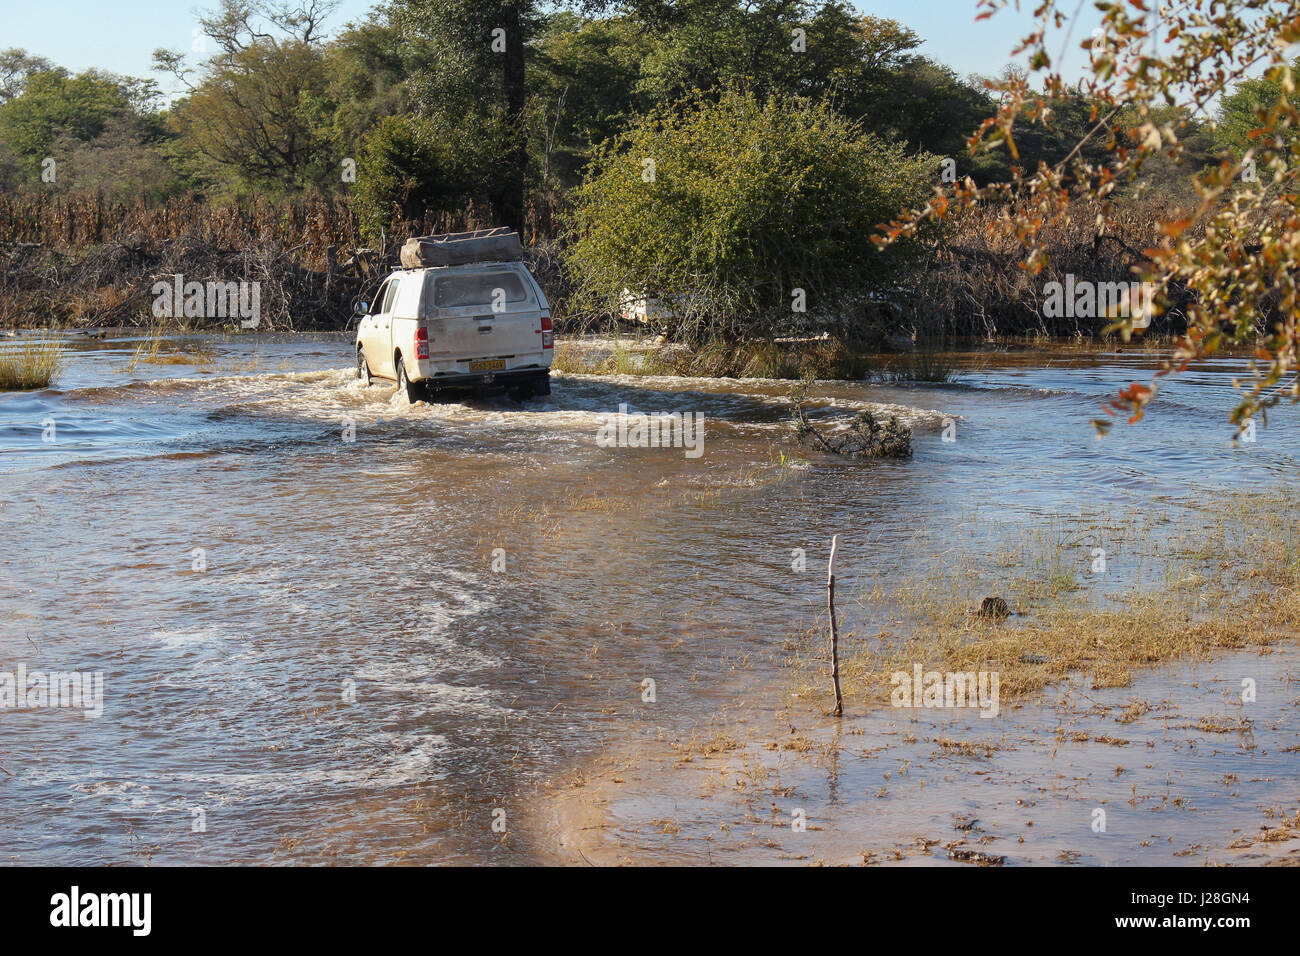 Le Botswana, safari, dur pour le delta de l'Okavango, passage de l'eau avec un véhicule de safari Banque D'Images